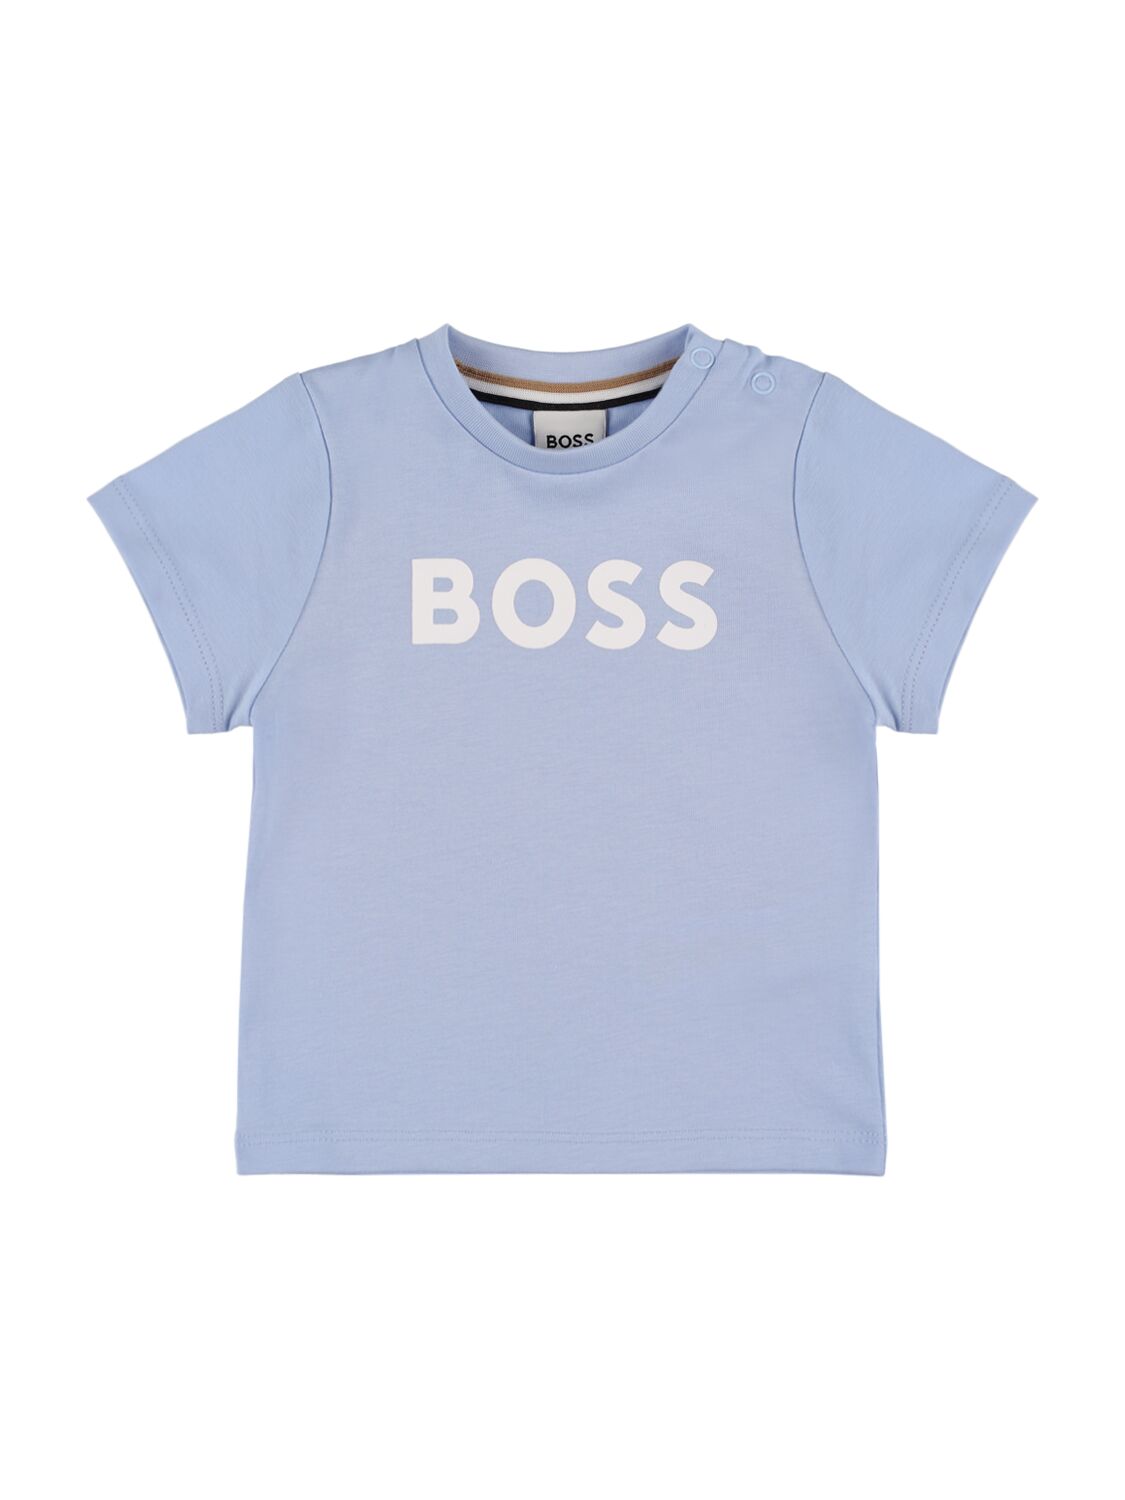 Hugo Boss Kids' Logo Print Cotton Jersey T-shirt In Light Blue